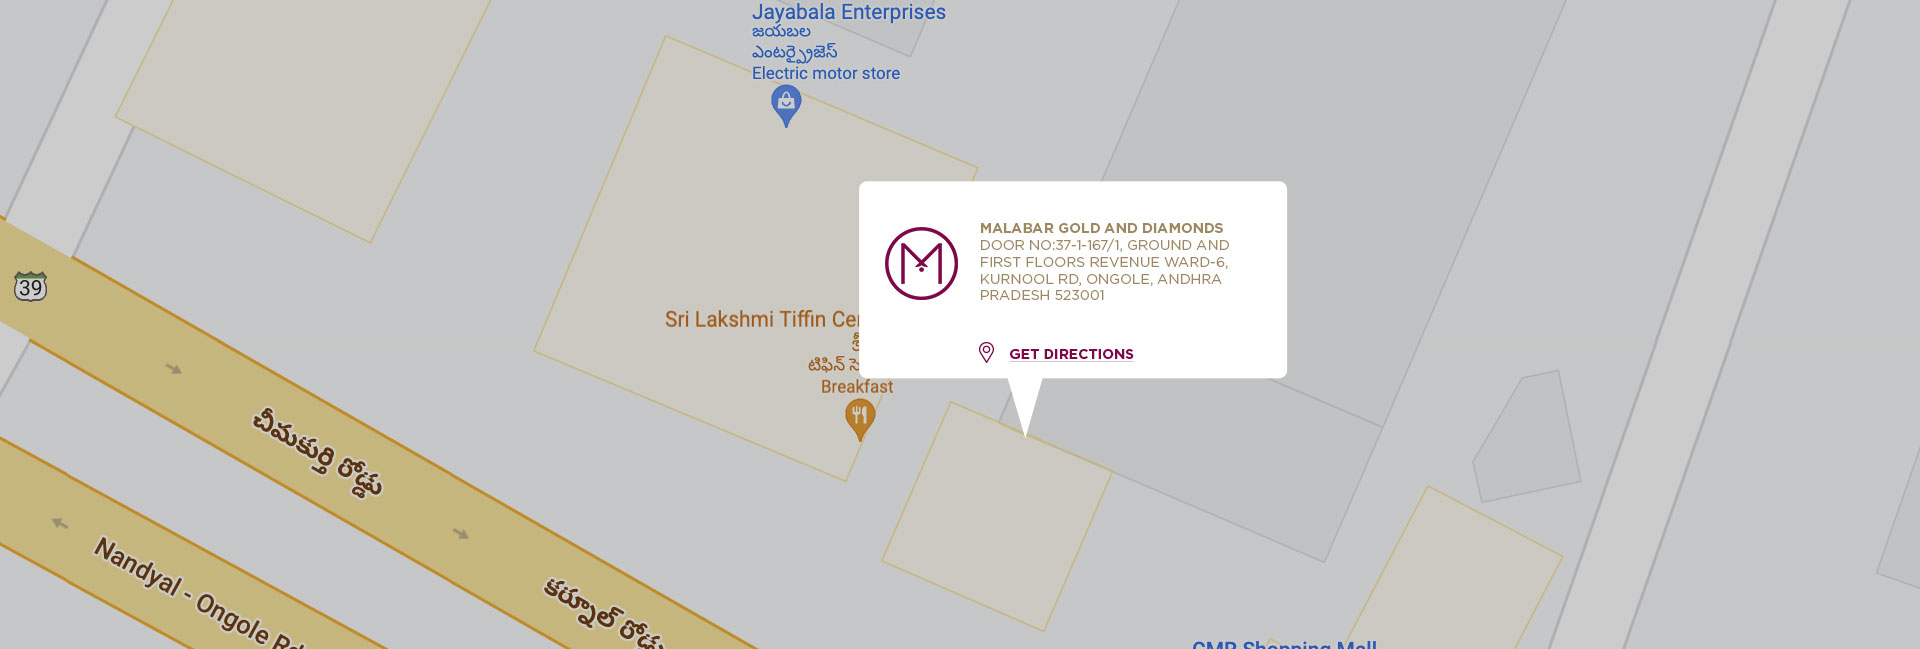 malabar-gold-and-diamonds-ongole-store-launch